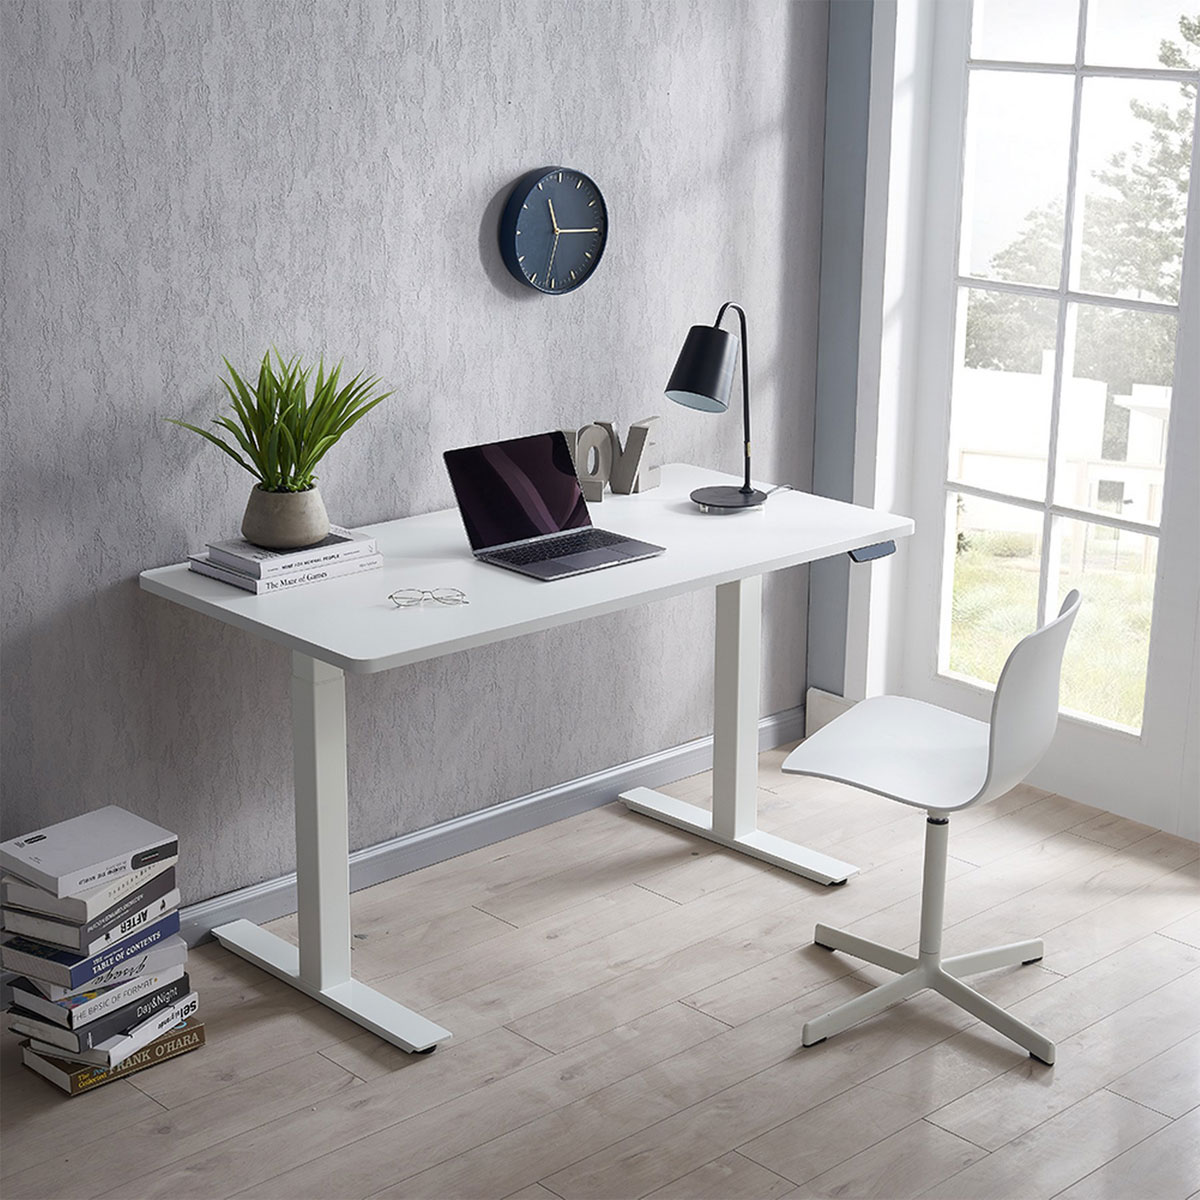 Elektrisch höhenverstellbarer Schreibtisch 160x80 cm, weiß, 68,5-116,5 cm Höhe